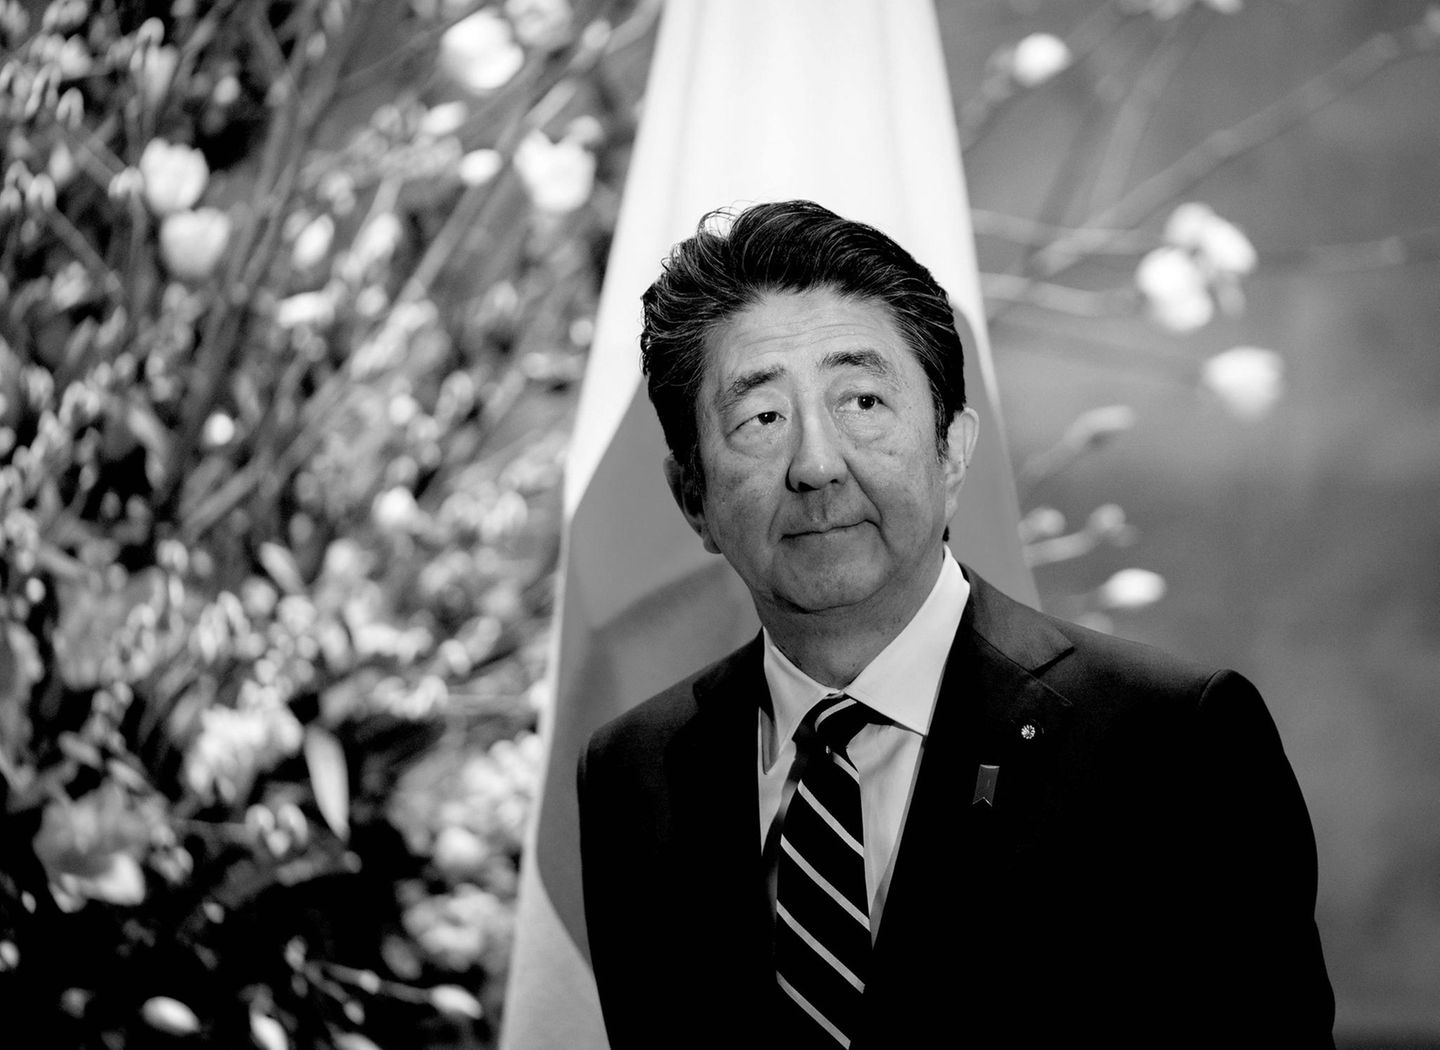 8. Juli 2022: Shinzō Abe (67 Jahre)  Das tödliche Attentat auf den ehemaligen Premierminister Japans schockiert die Welt. Während einer Wahlkampfveranstaltung in Nara wurde Abe angeschossen und erlag seinen Verletzungen wenige Zeit später. In der japanischen Geschichte war der hochangesehene Politiker der am längsten amtierende Premier.